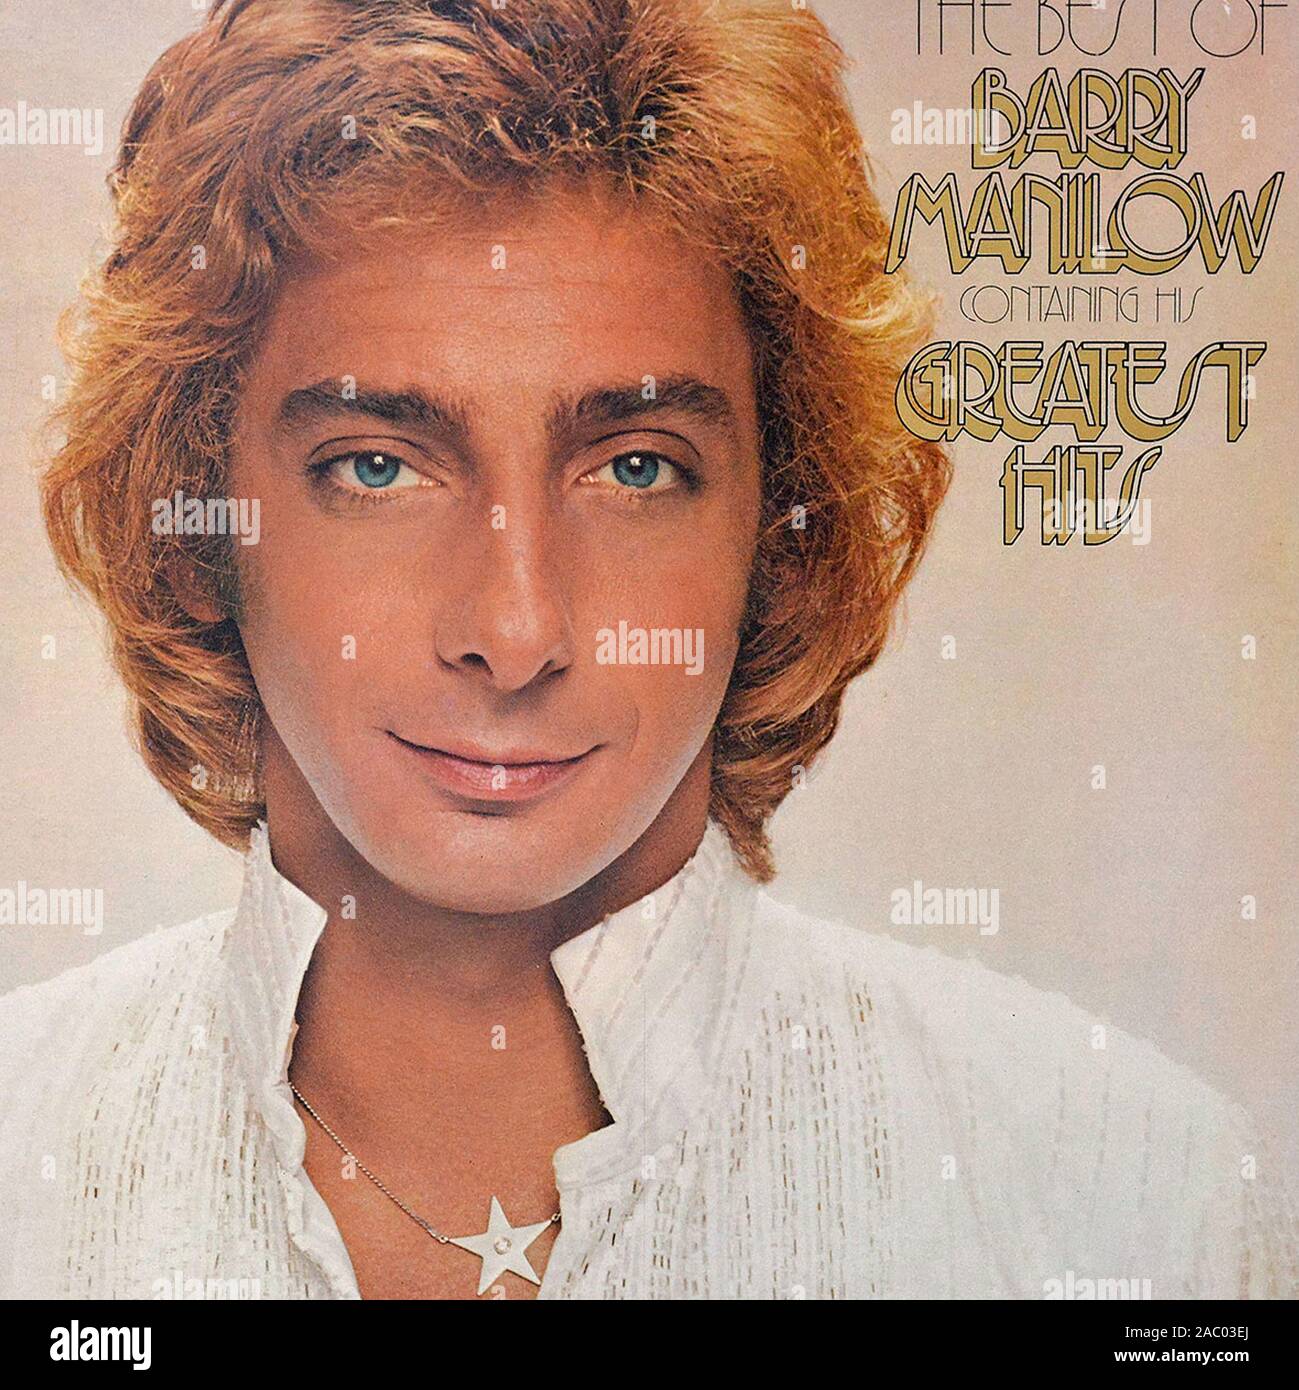 Sinik le meilleur de Barry Manilow - couverture de l'album vinyle vintage Banque D'Images